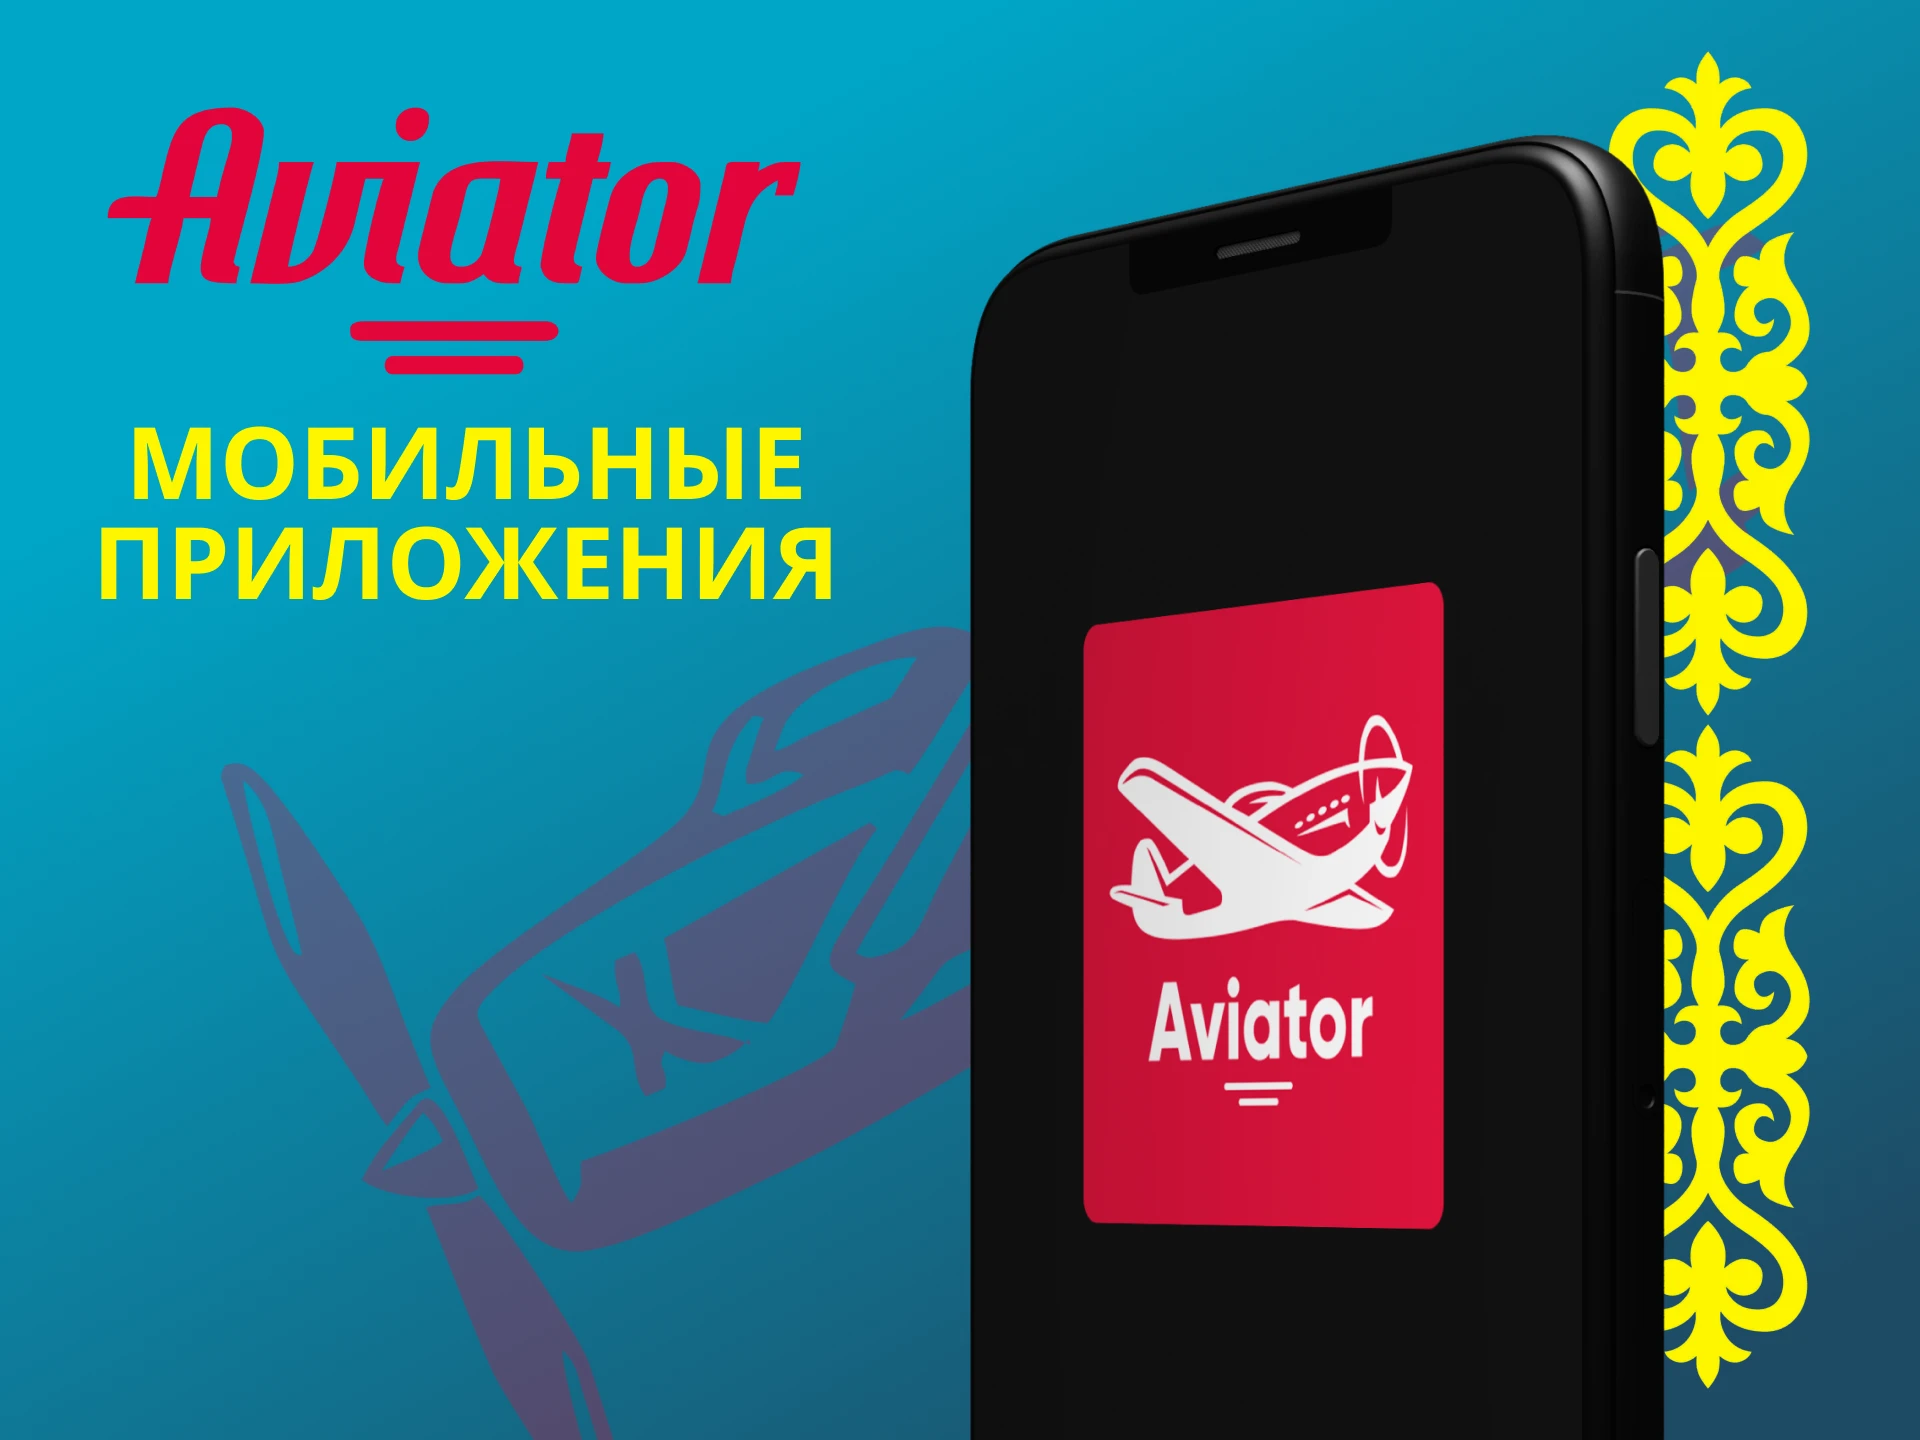 Играть в Авиатор можно через приложения на телефоне.